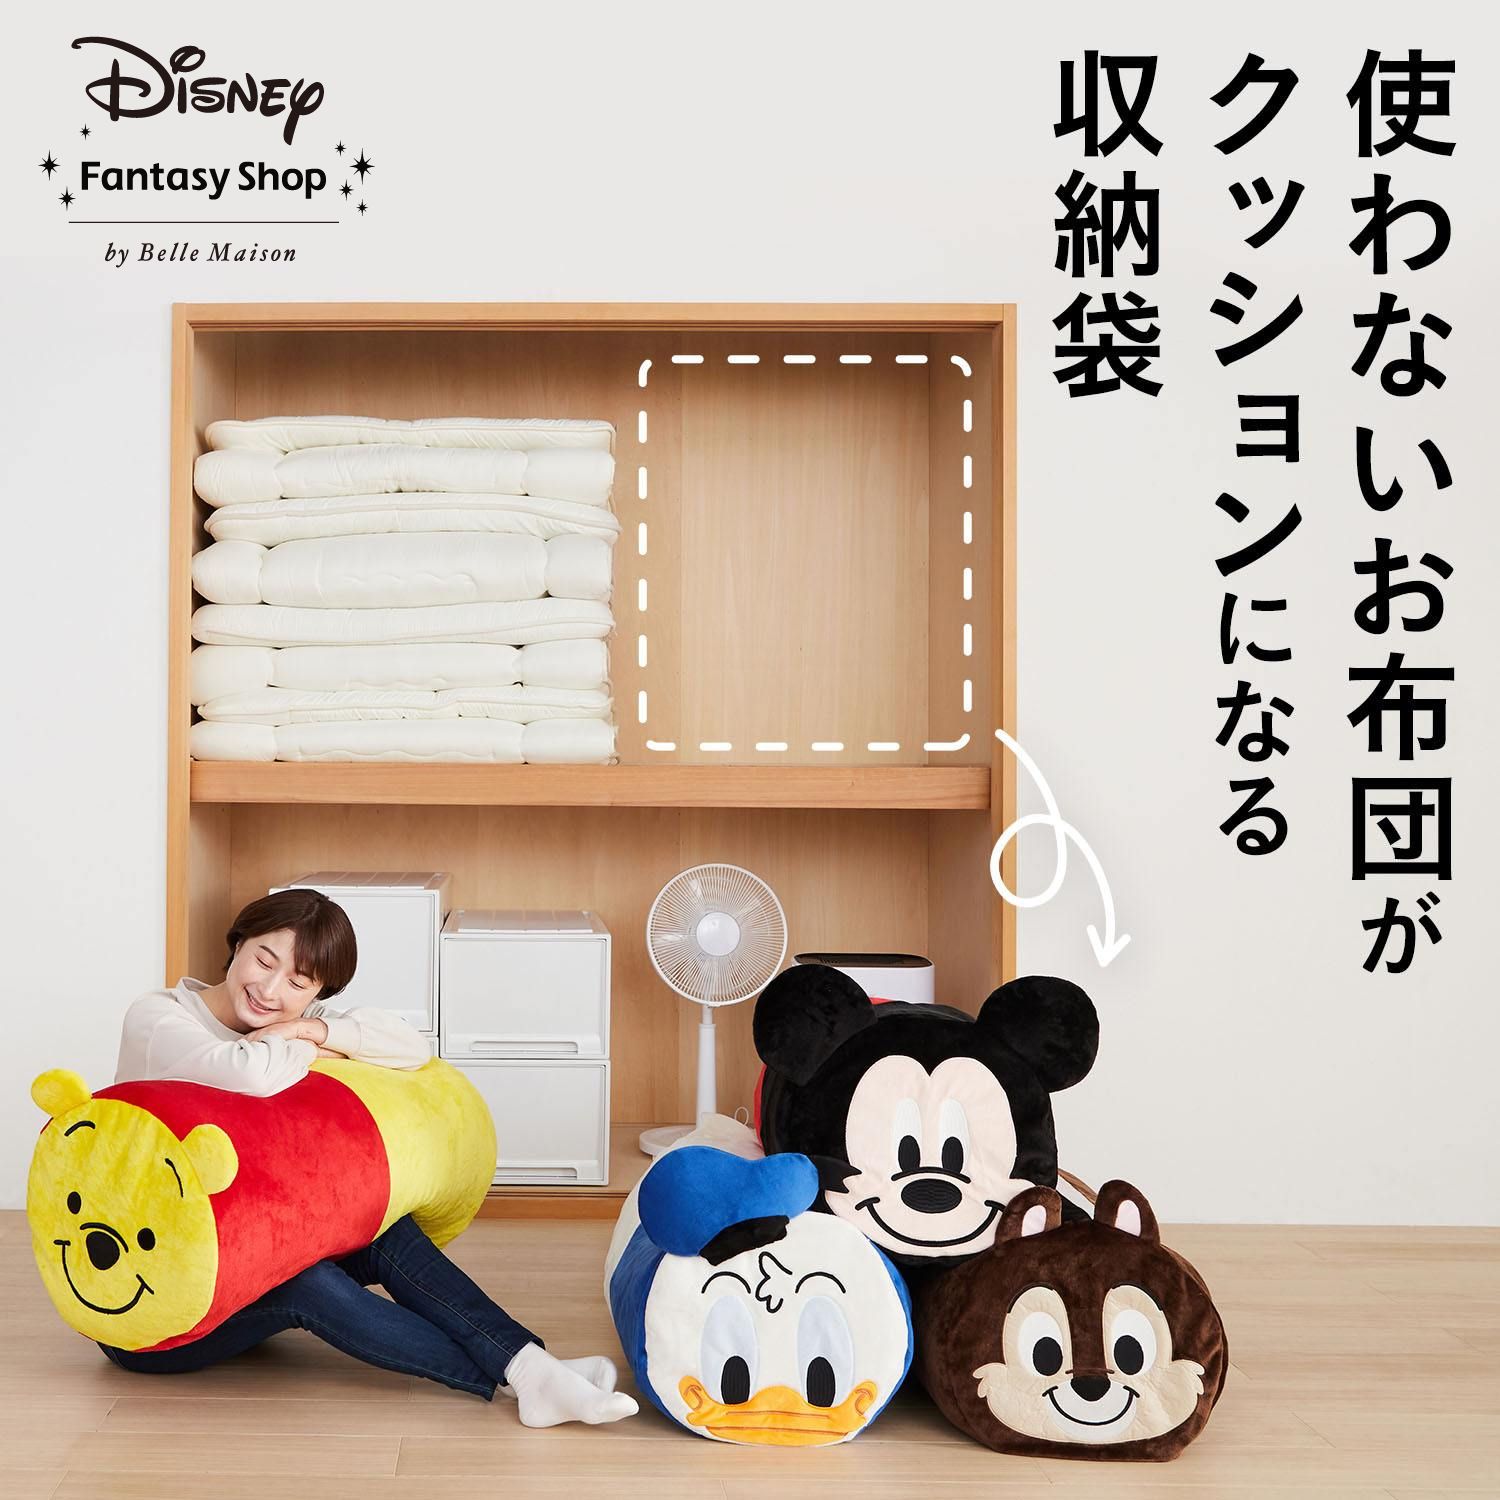 【ディズニー/Disney】抱き枕になる布団収納袋(選べるキャラクター)